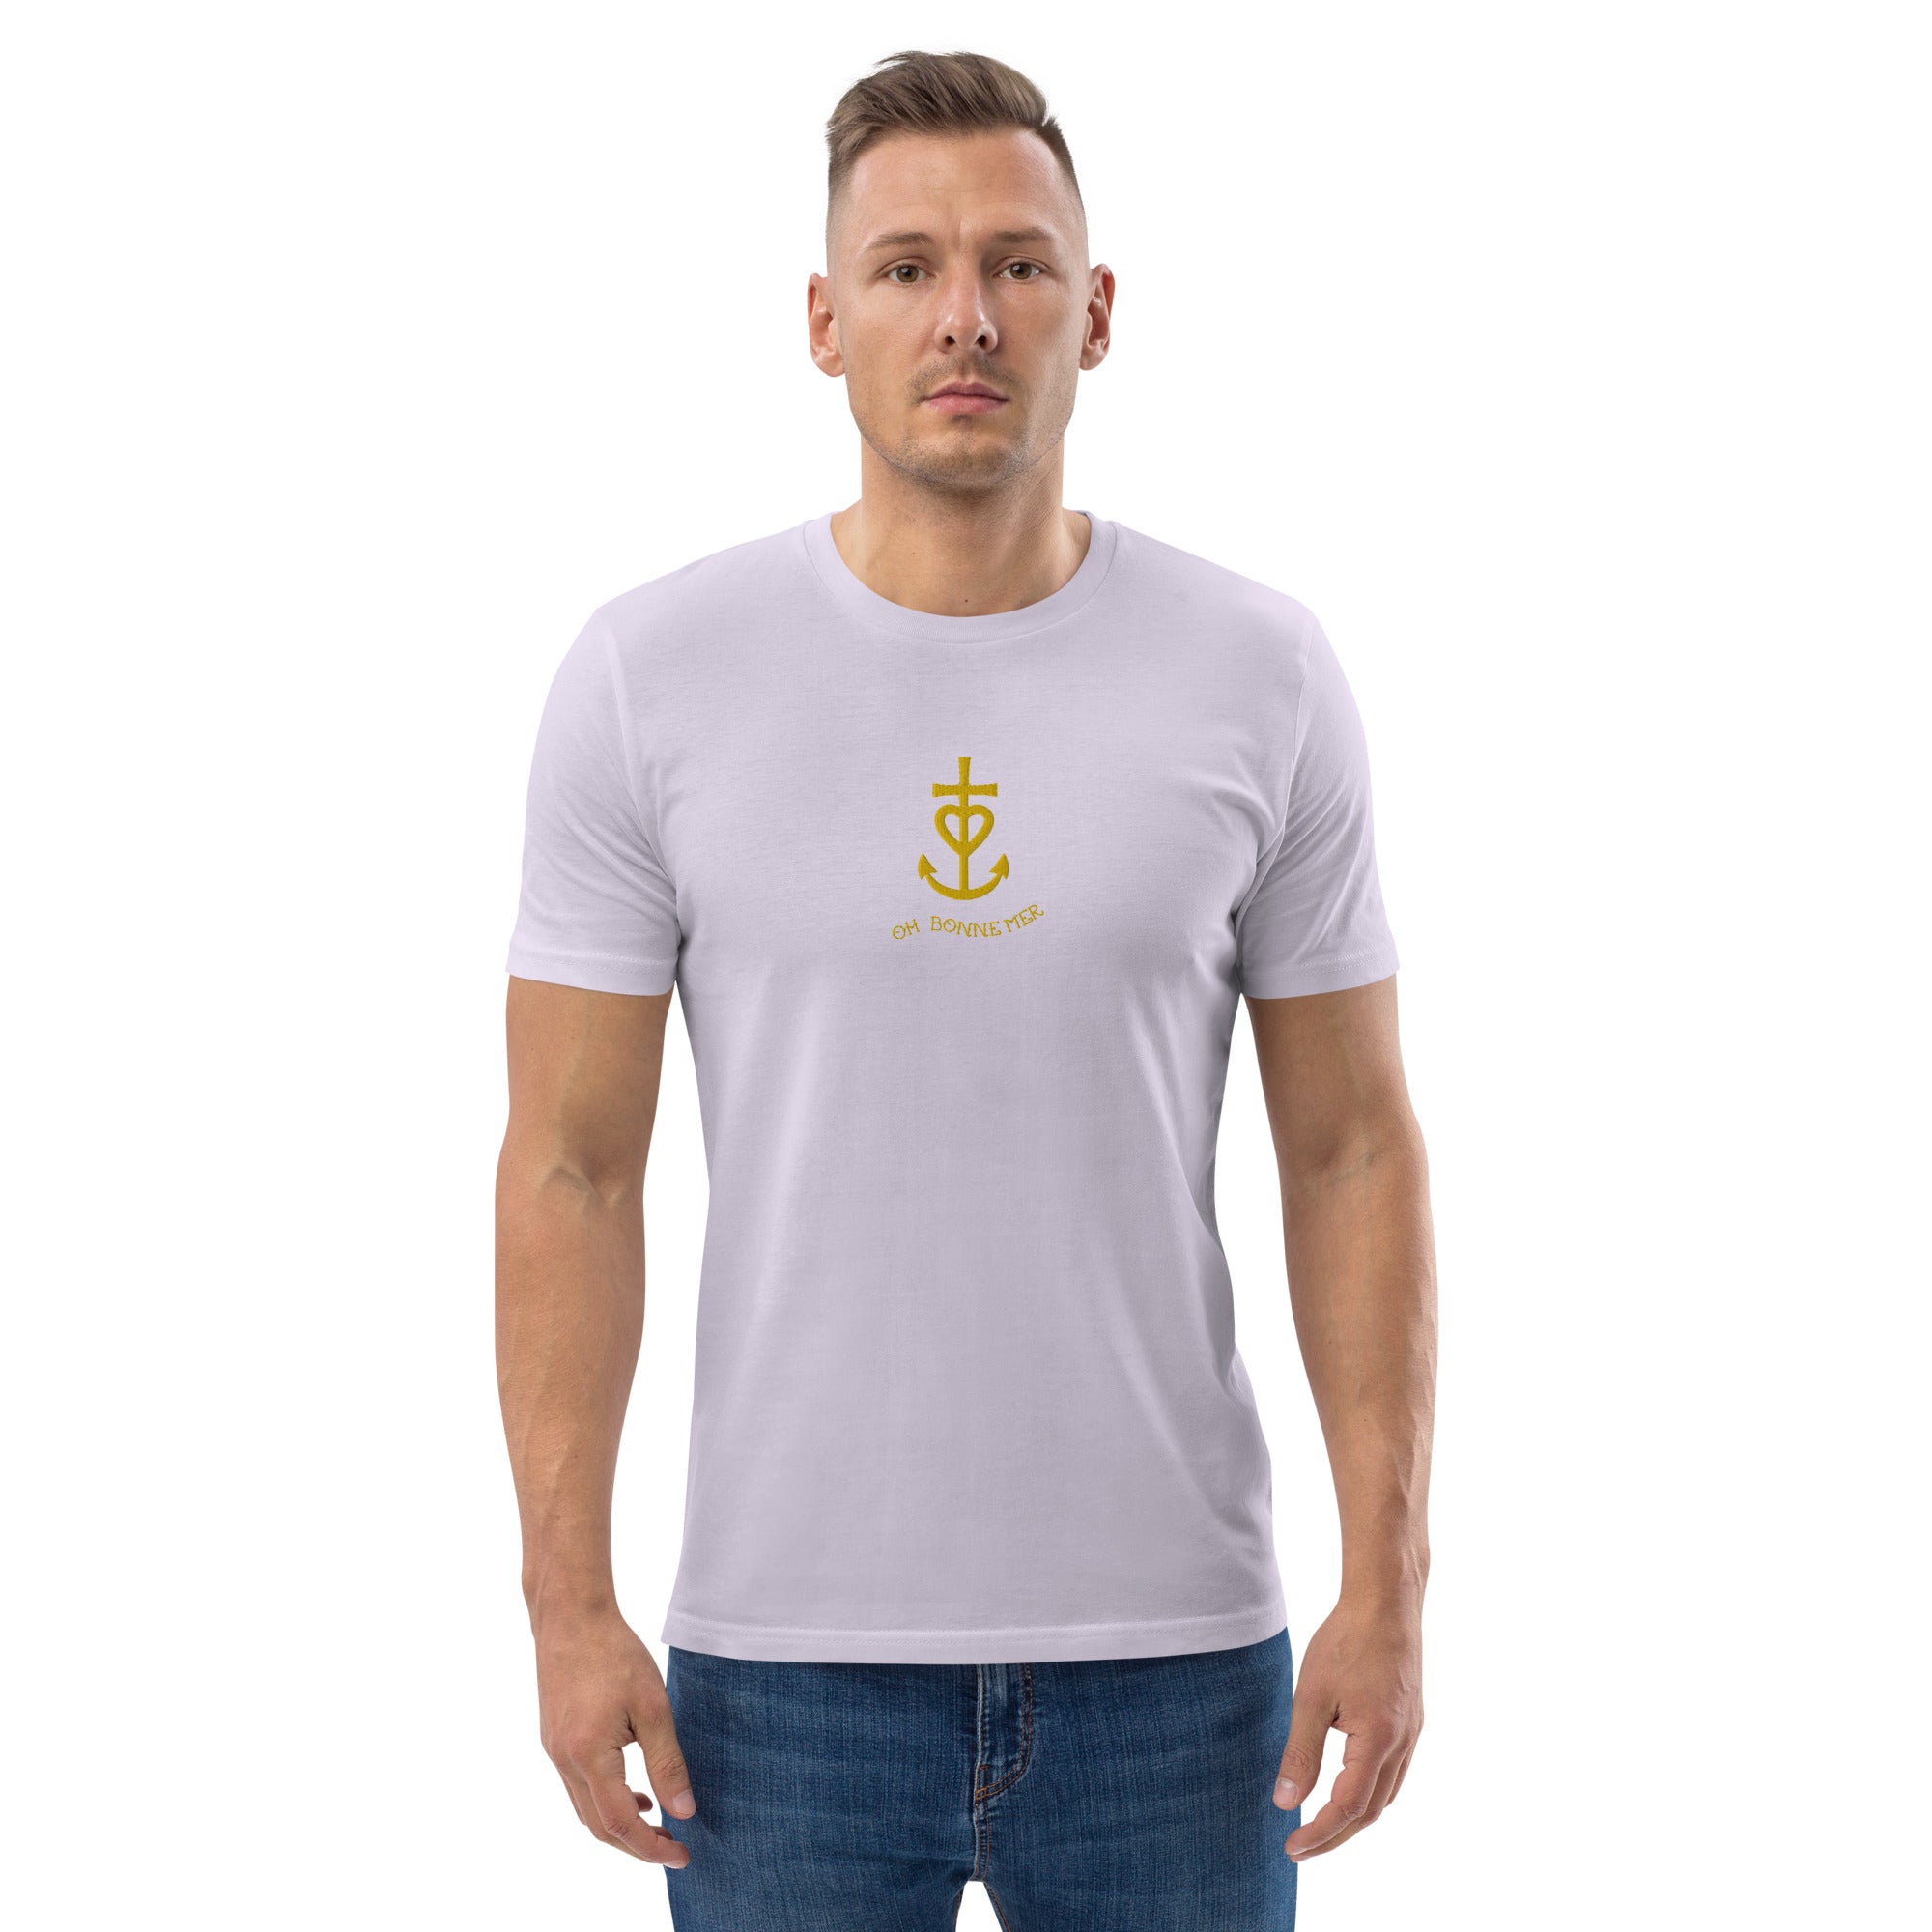 T-shirt unisexe en coton biologique Croix de Camargue dorée Oh Bonne mer brodé sur couleurs claires